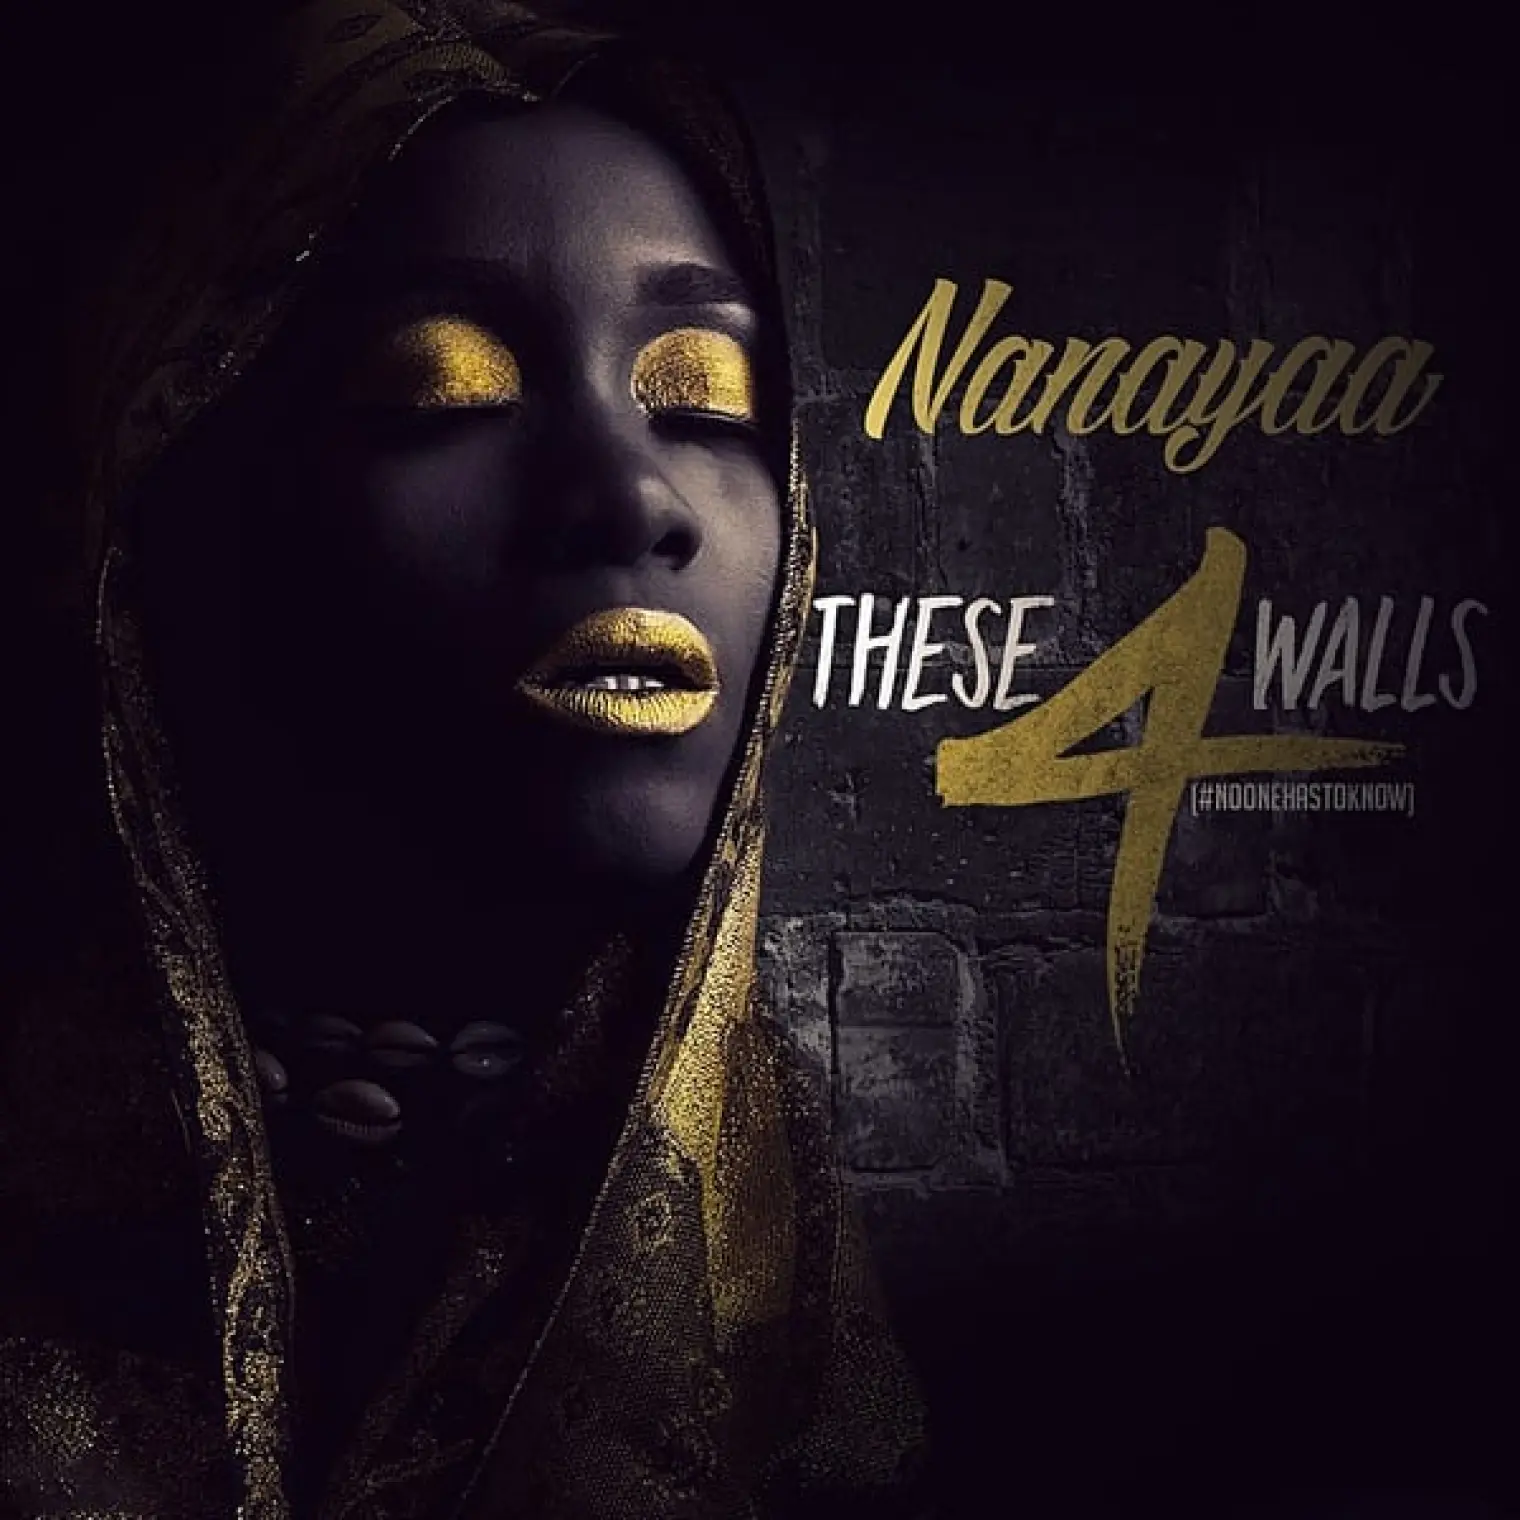 These 4 Walls (NooneHasToKnow) -  Nanayaa 